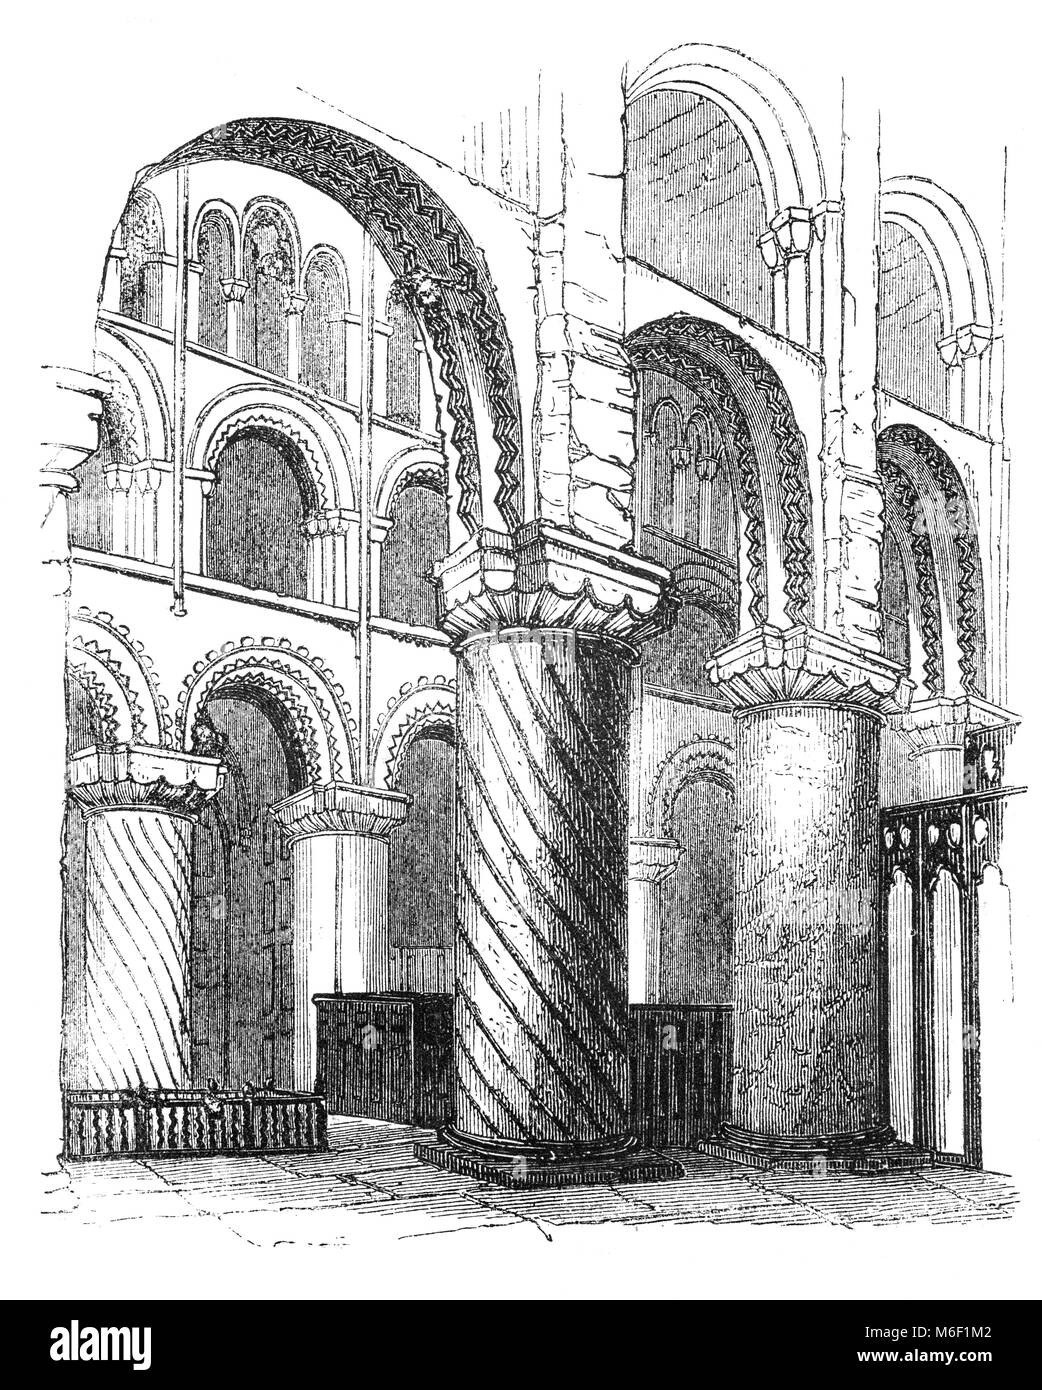 L'intérieur de l'église de l'abbaye de Waltham Holy Cross et St Laurent de l'autre côté de la rivière Lea dans la ville de Waltham Abbey, Essex, Angleterre. Le bâtiment actuel date essentiellement du début du 12e siècle et est un exemple d'architecture normande. Banque D'Images